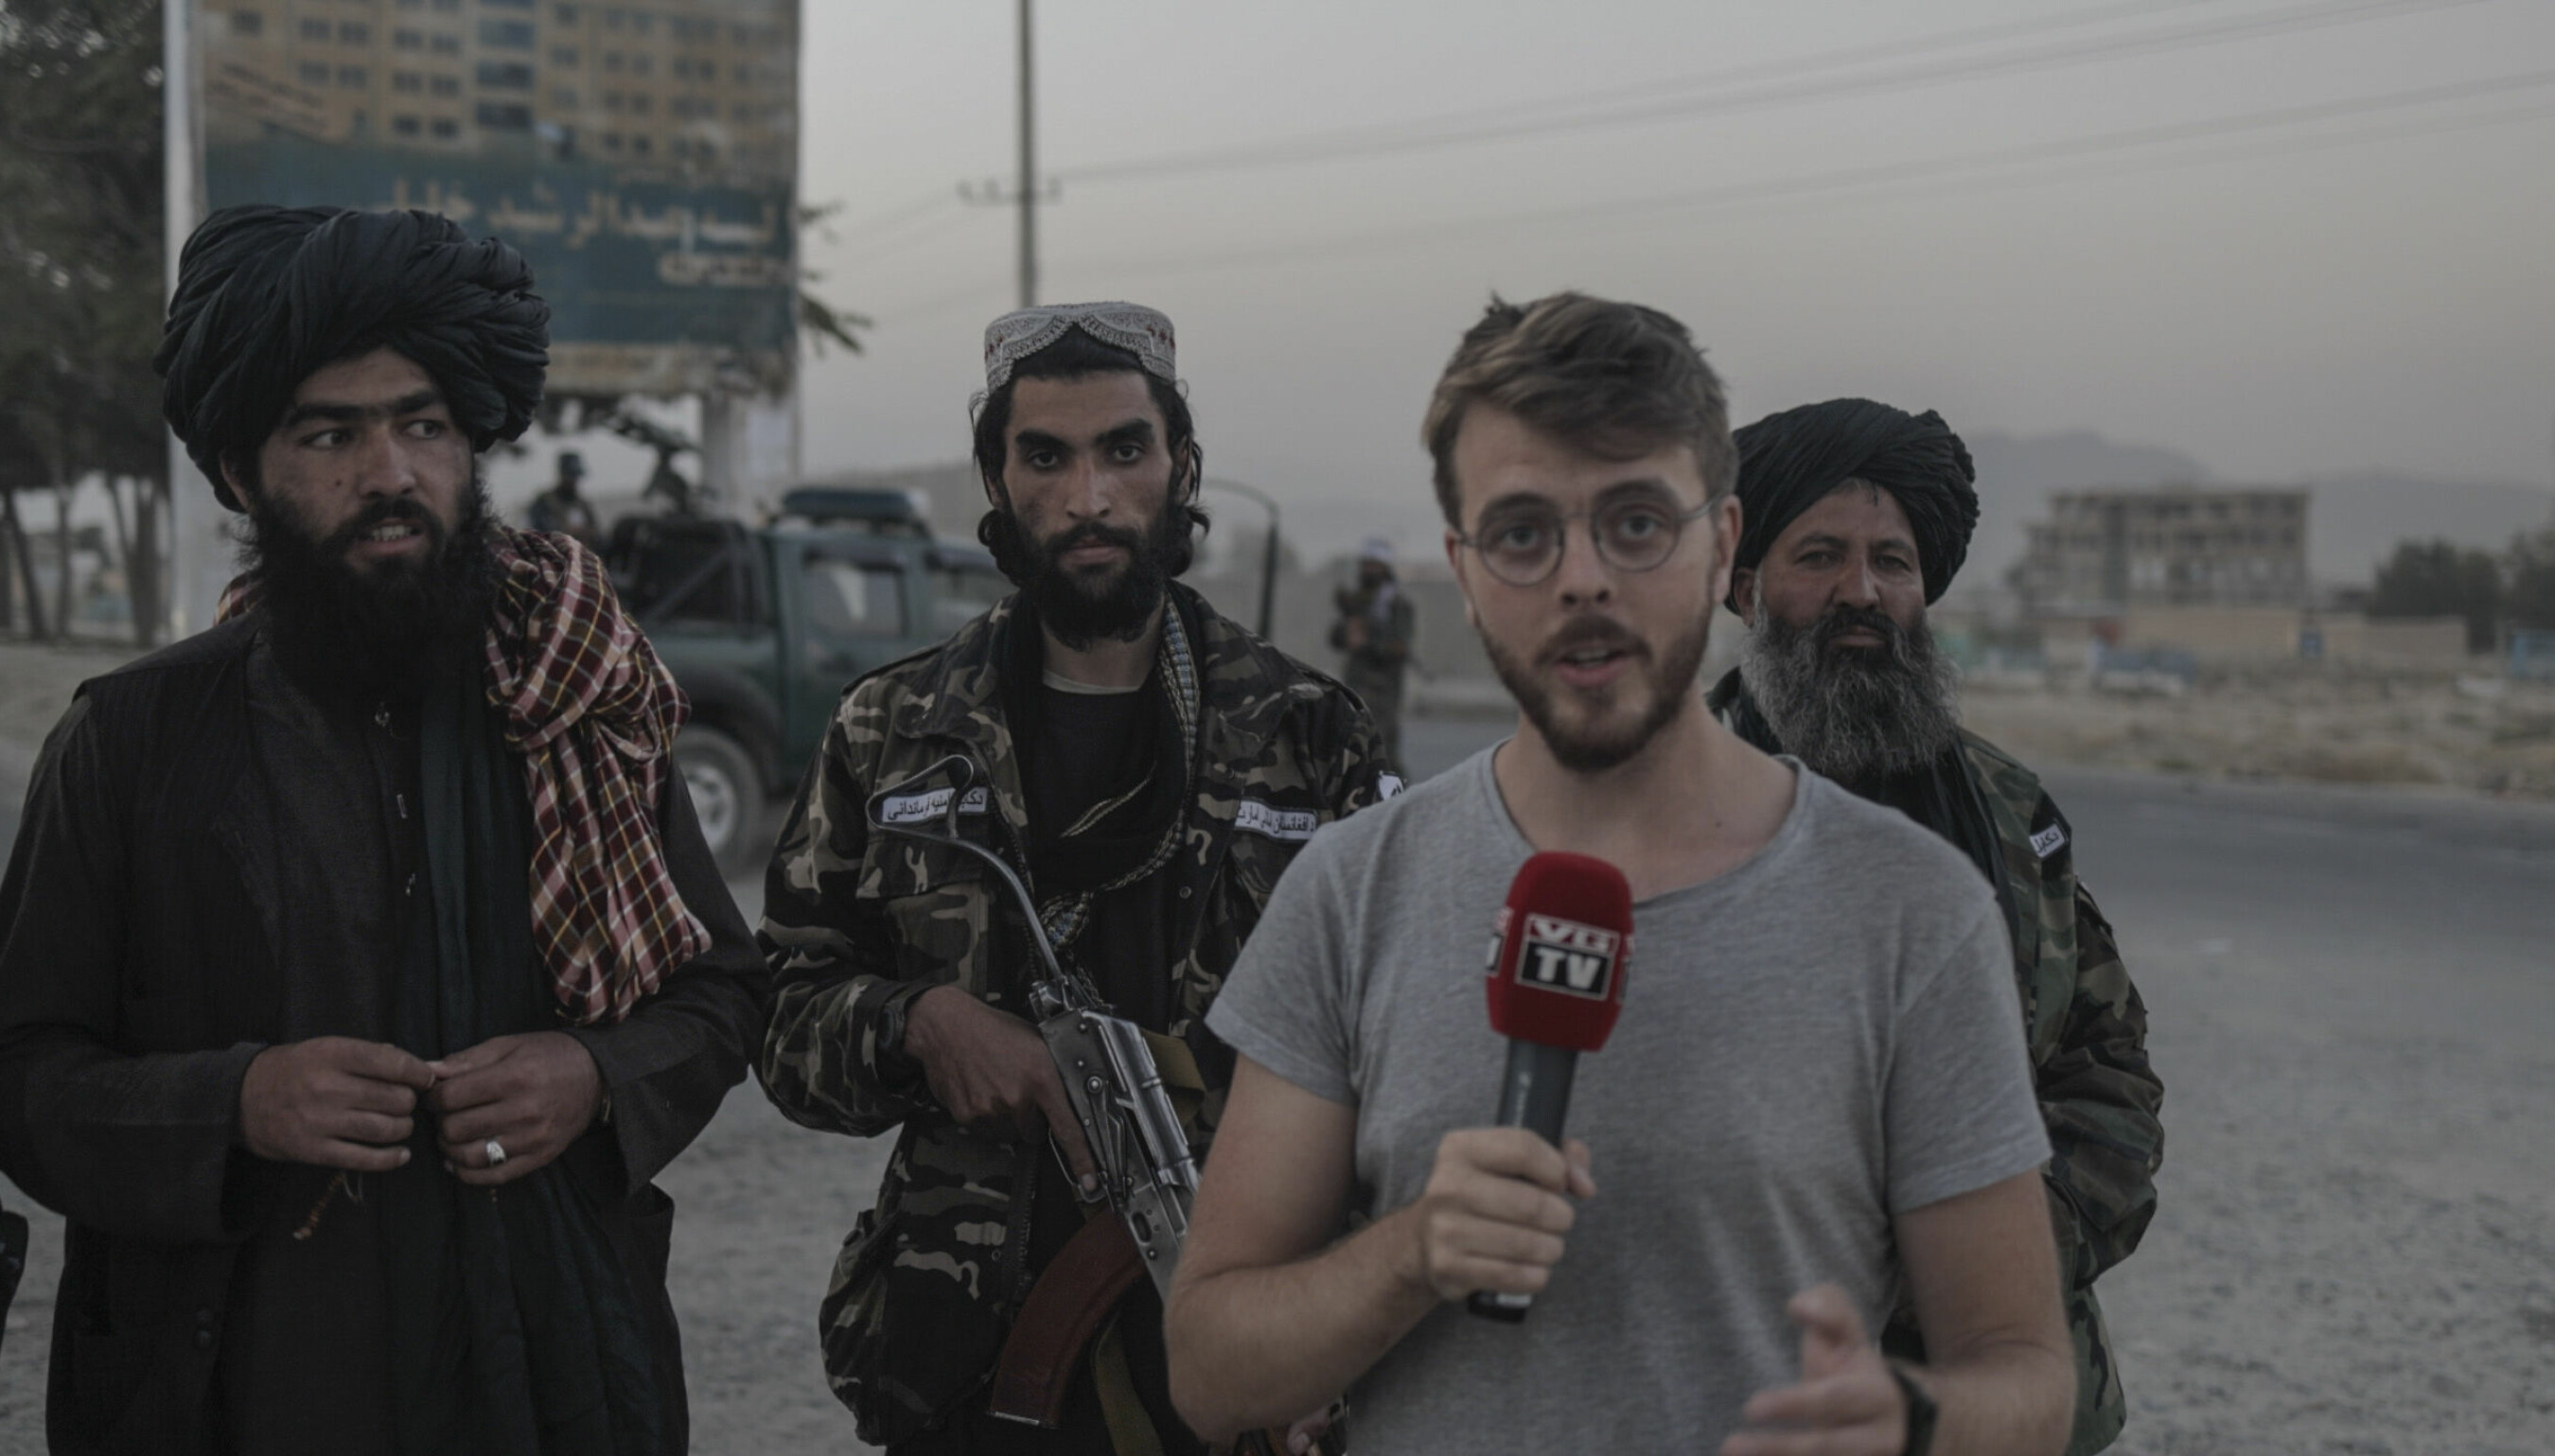 VGs Midtøsten-korrespondent Kyrre Lien intervjuer Taliban-soldater i Afghanistan i september i år, på en reportasjetur sammen med VG-fotograf Harald Henden